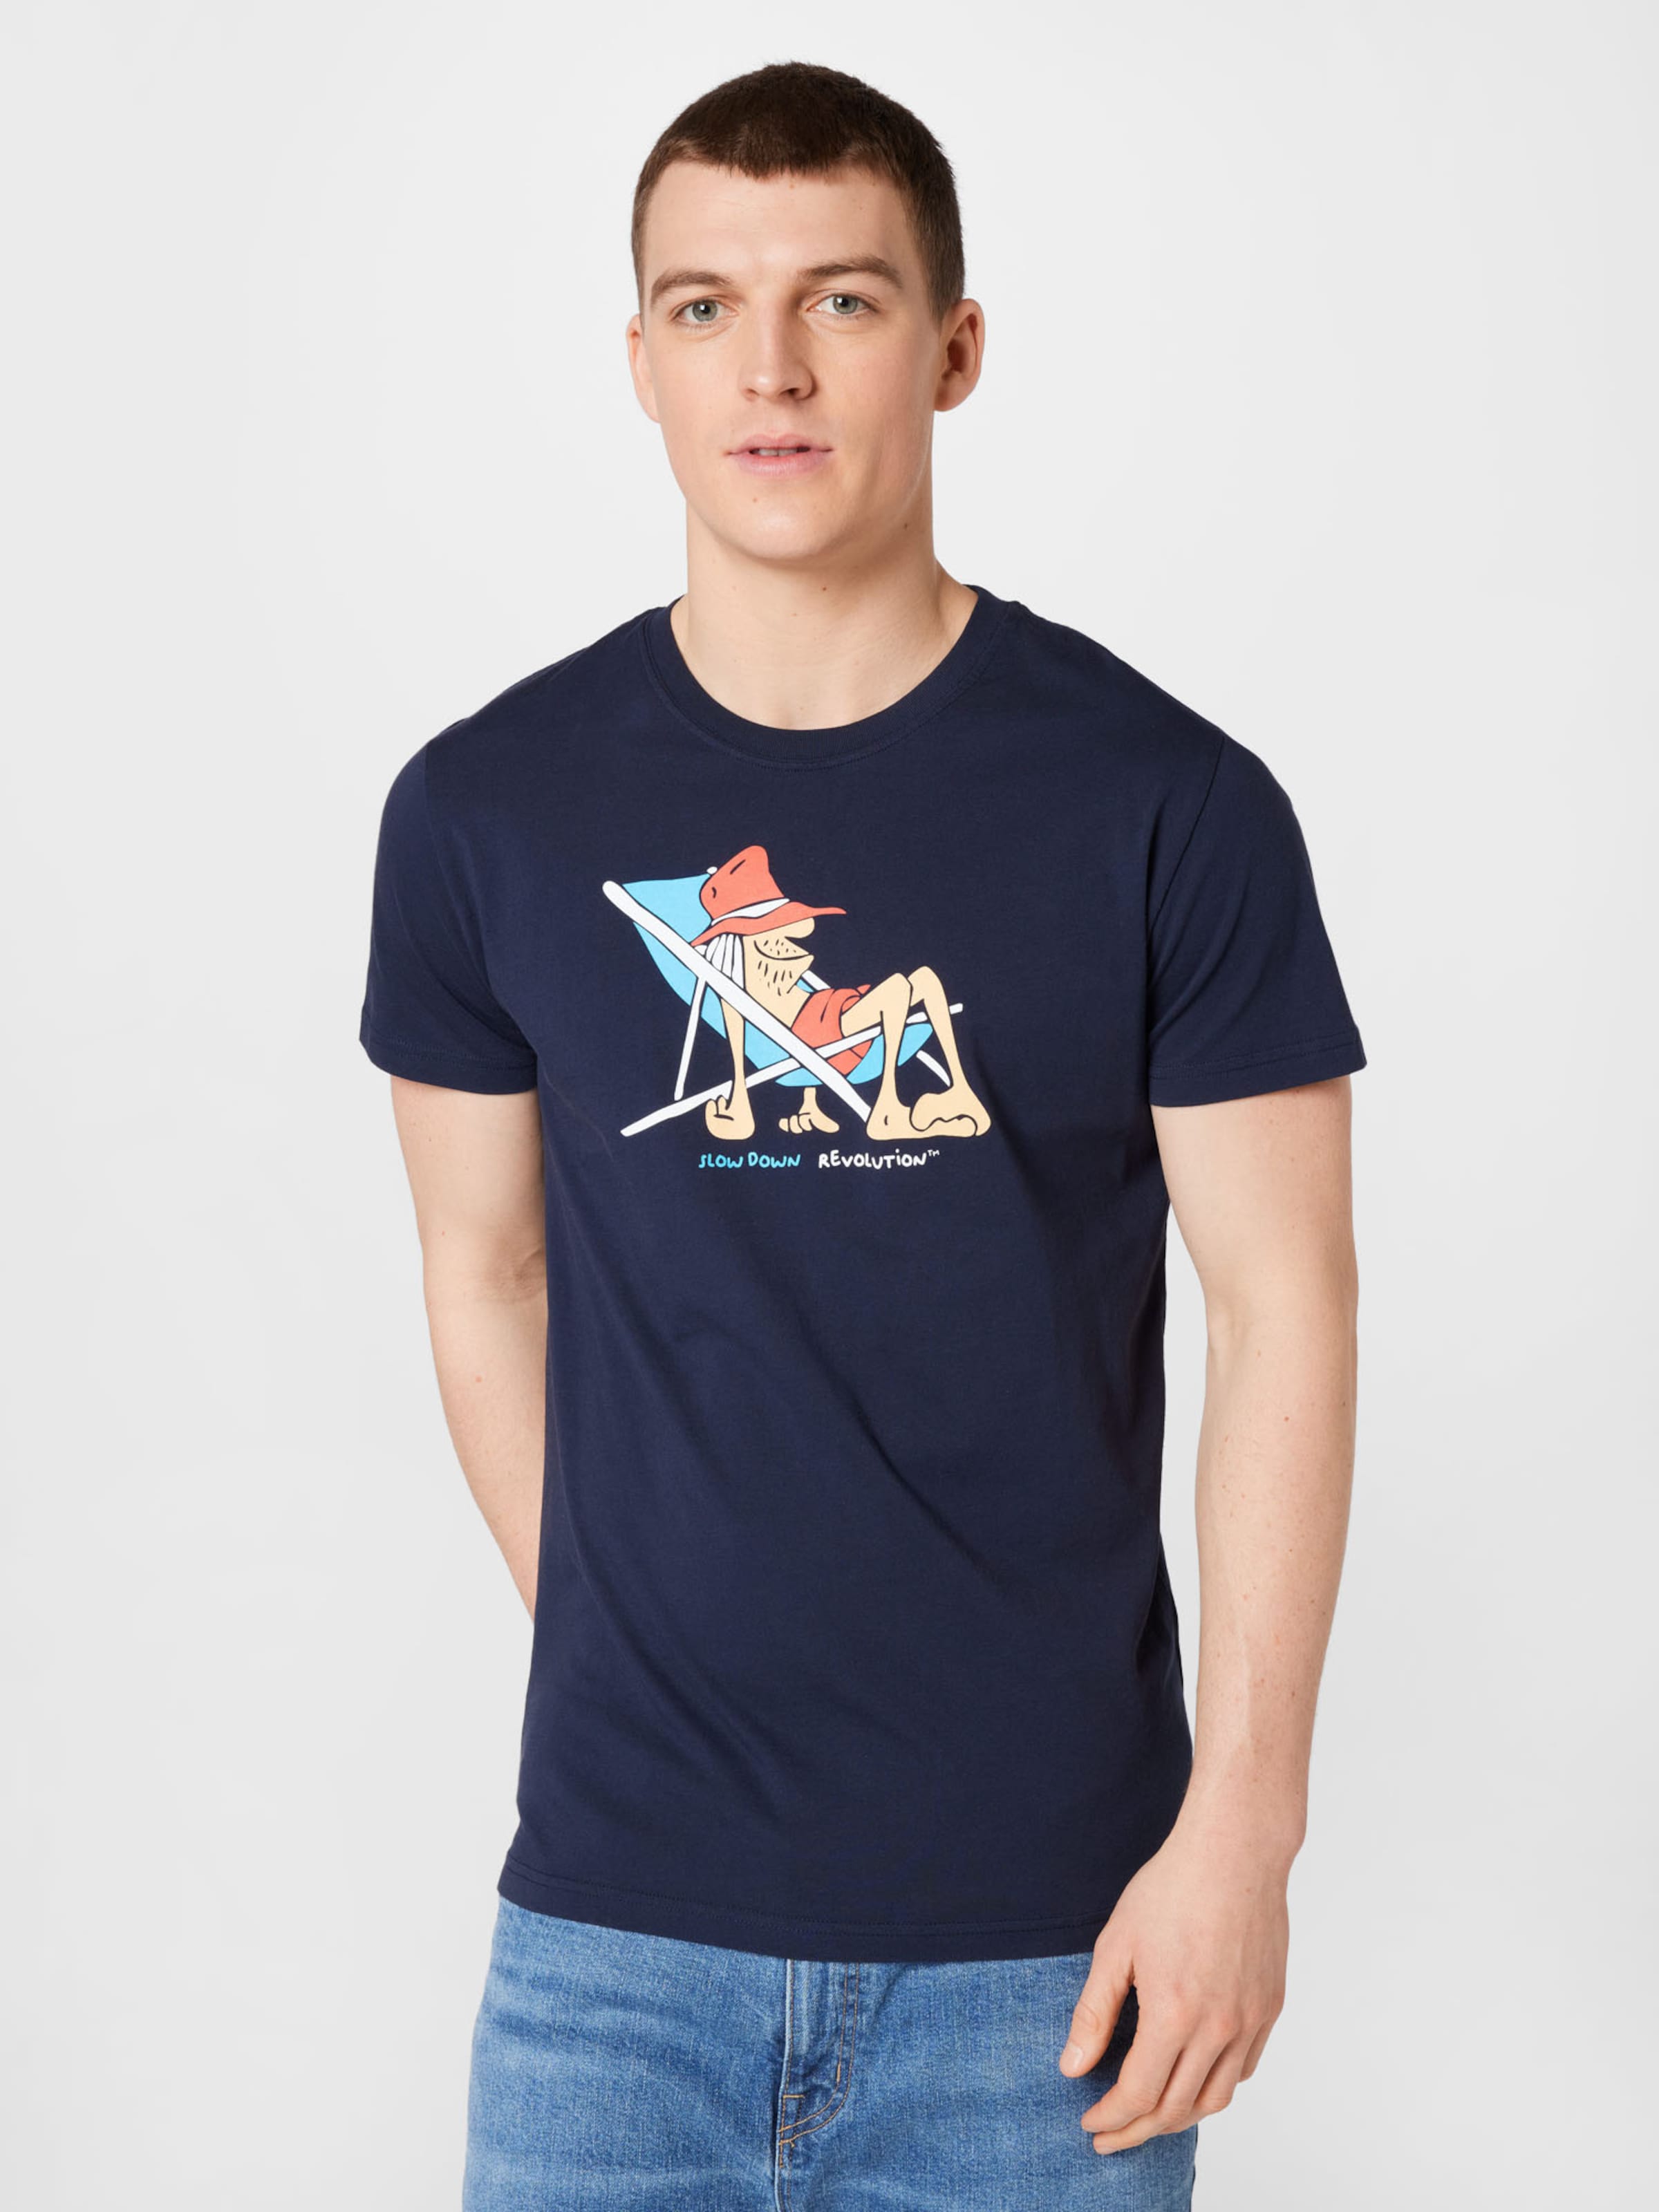 Männer Shirts Revolution T-Shirt in Navy, Hellblau - HZ58423